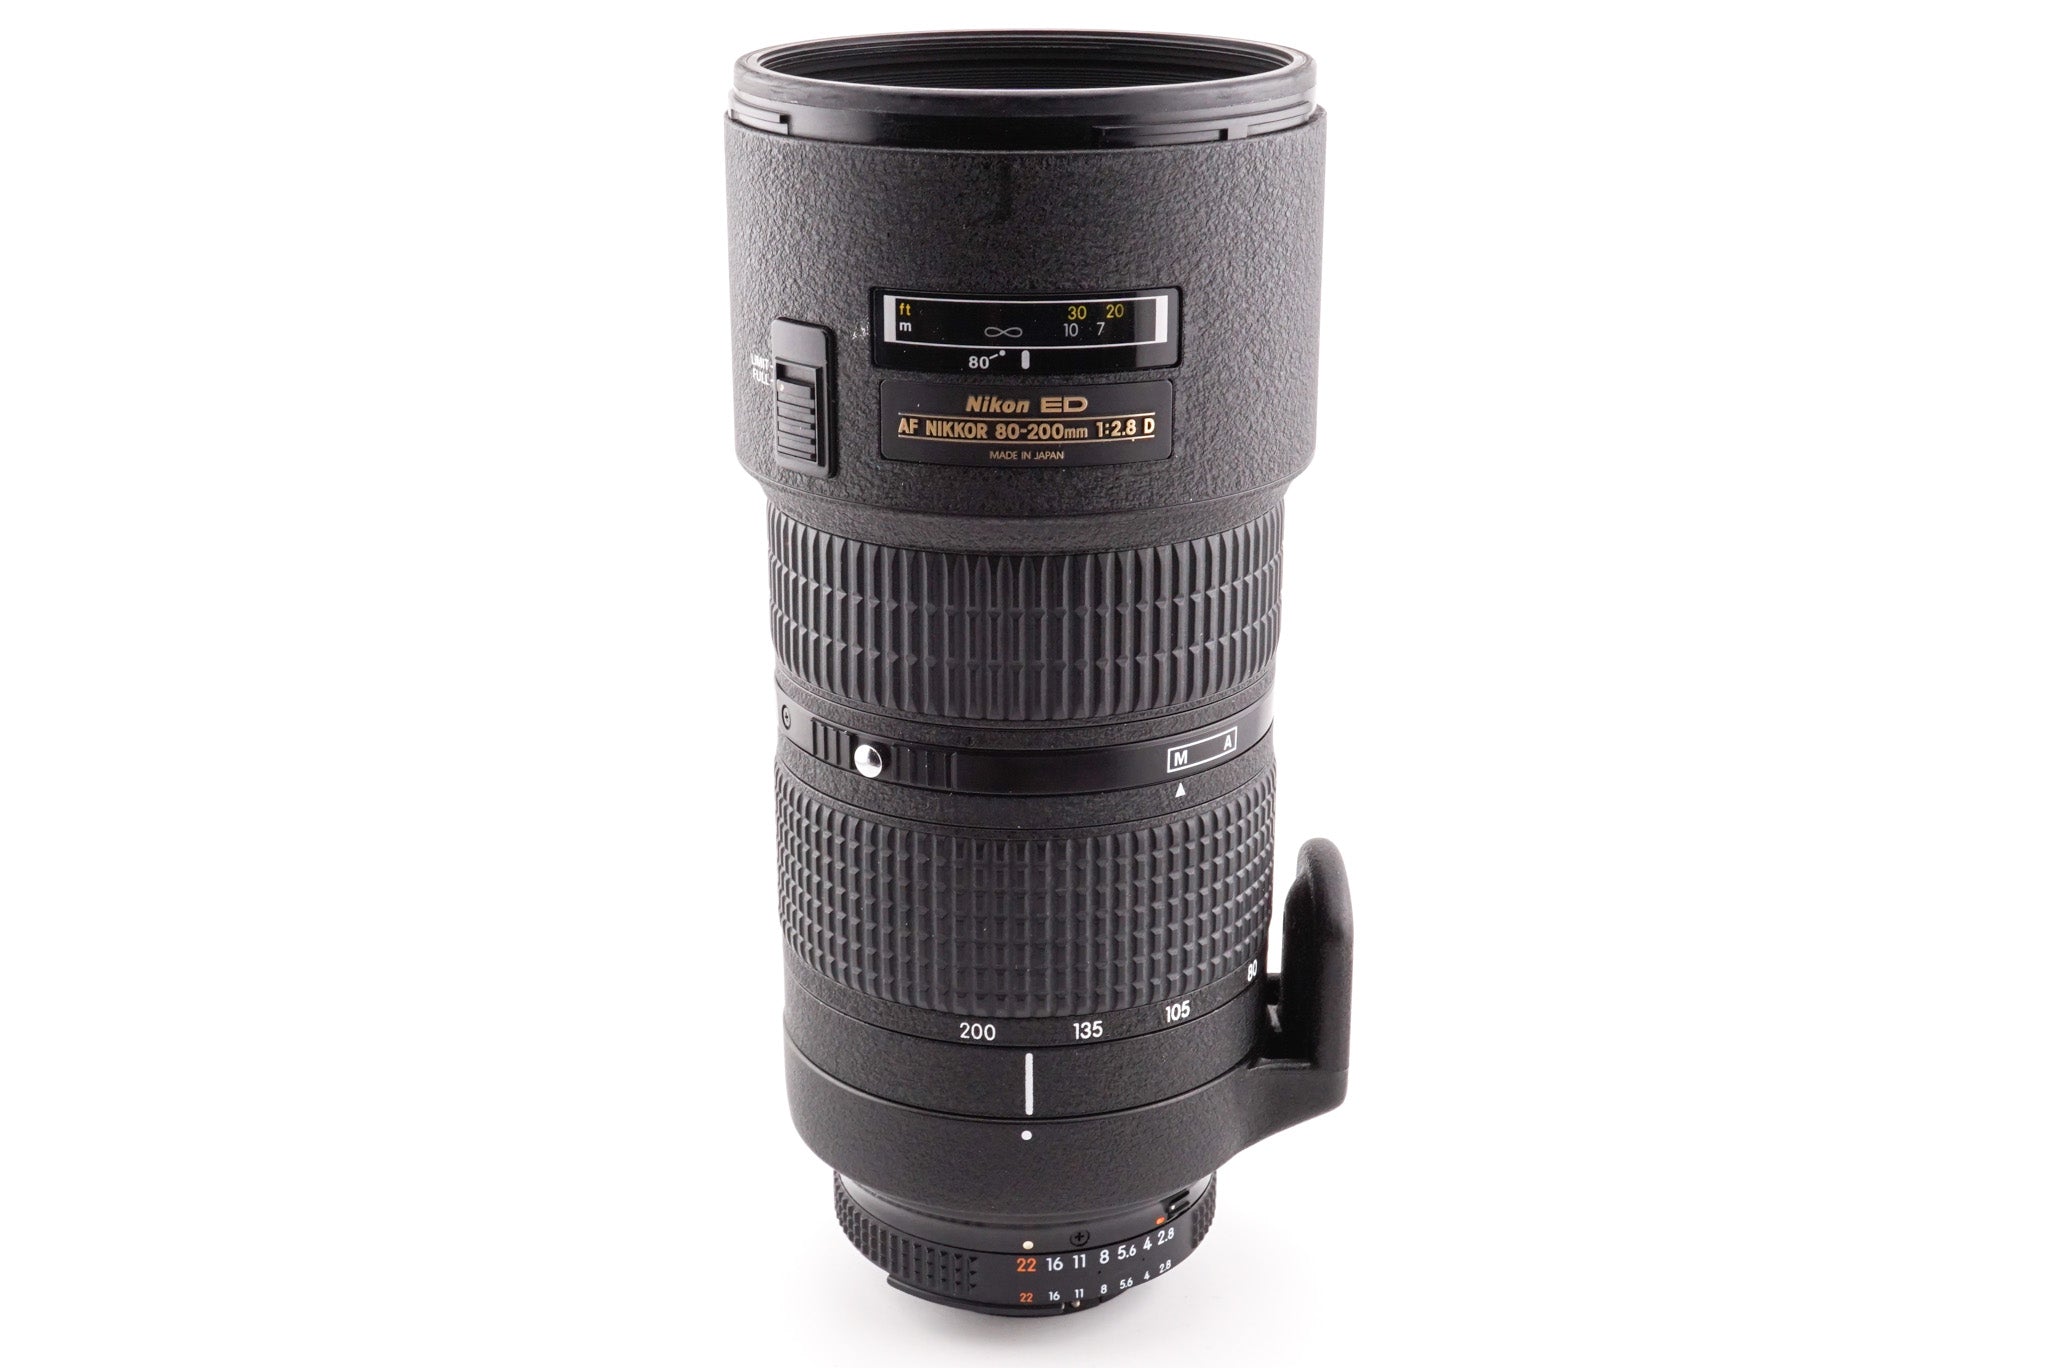 Nikon 80-200mm f2.8 D ED AF Zoom Nikkor (Mark III / Dual Ring) - Lens